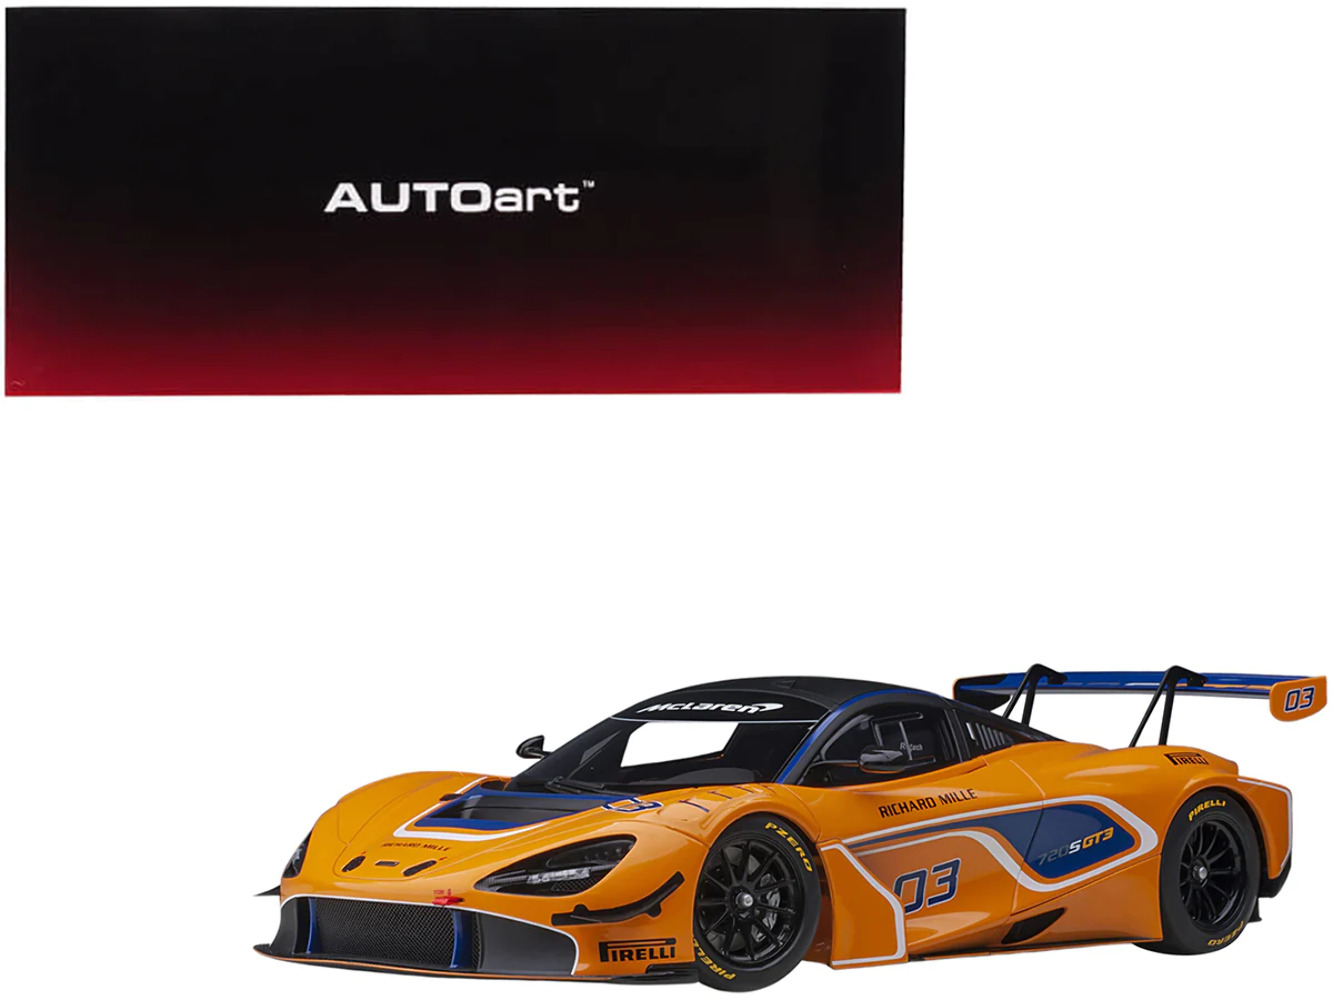 Mclaren 720S GT3 #03 Orange with Matt Black Top 1/18 Model Car